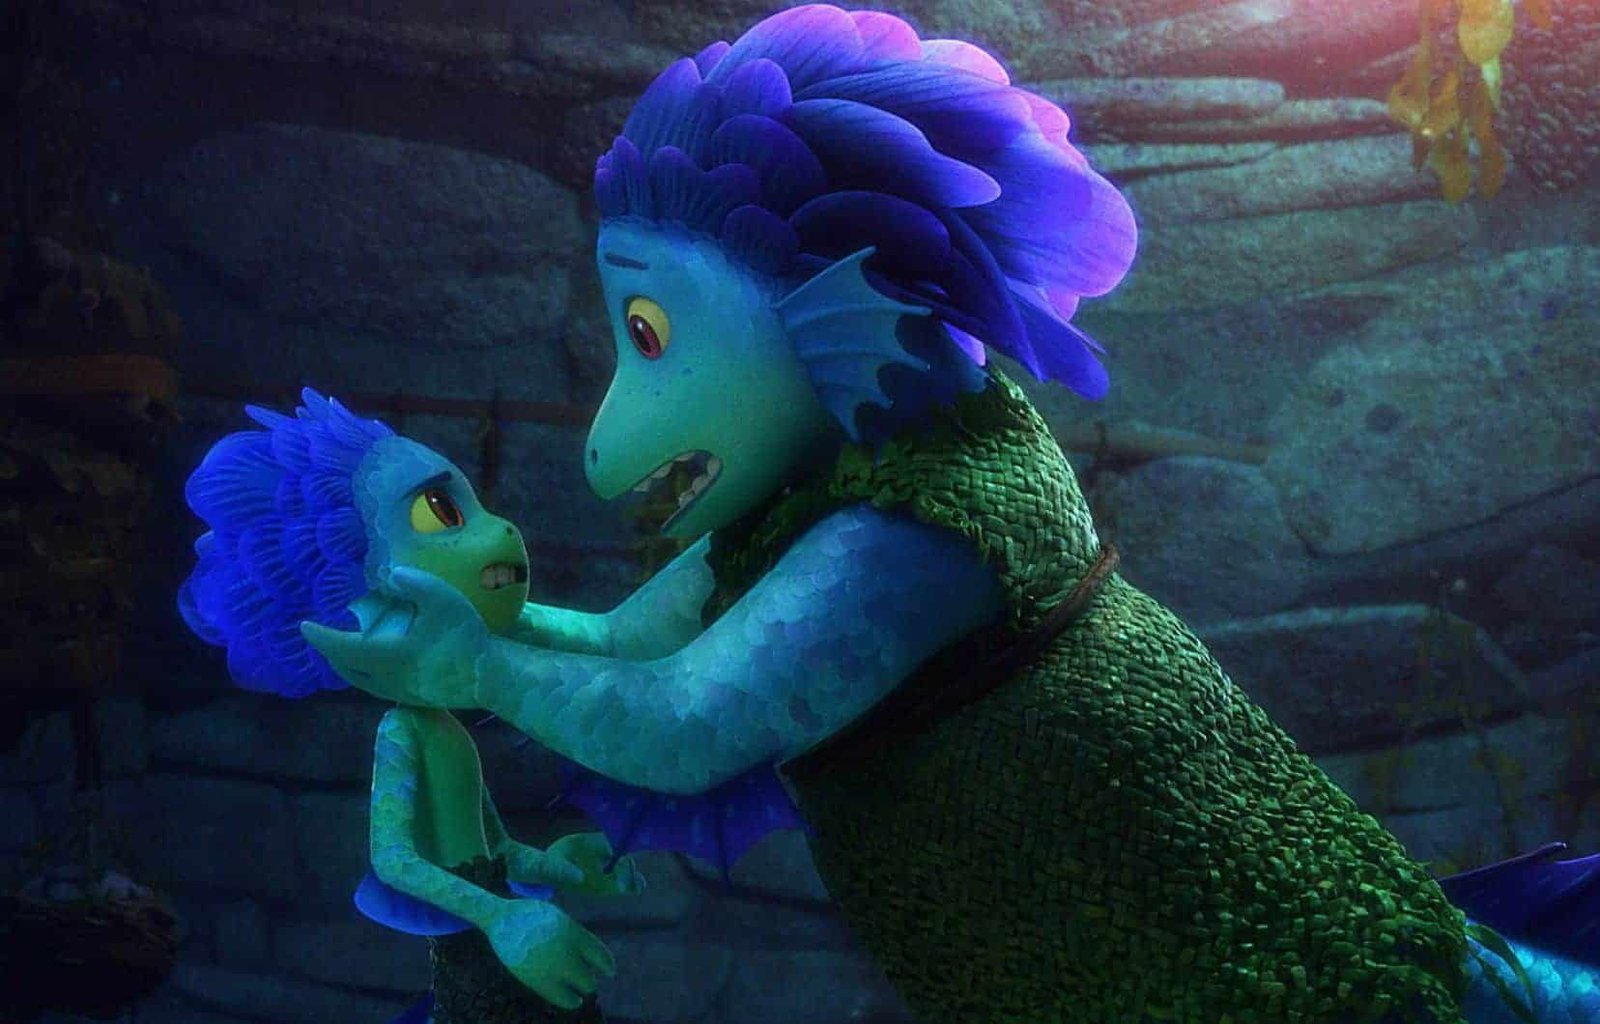 Deux créatures marines animées du film Pixar "Luca" à la peau vert bleuâtre et aux cheveux violets éclatants, ressemblant à de jeunes garçons, partagent un moment d'inquiétude et de connexion sous l'eau, entourées d'un paysage faiblement éclairé.